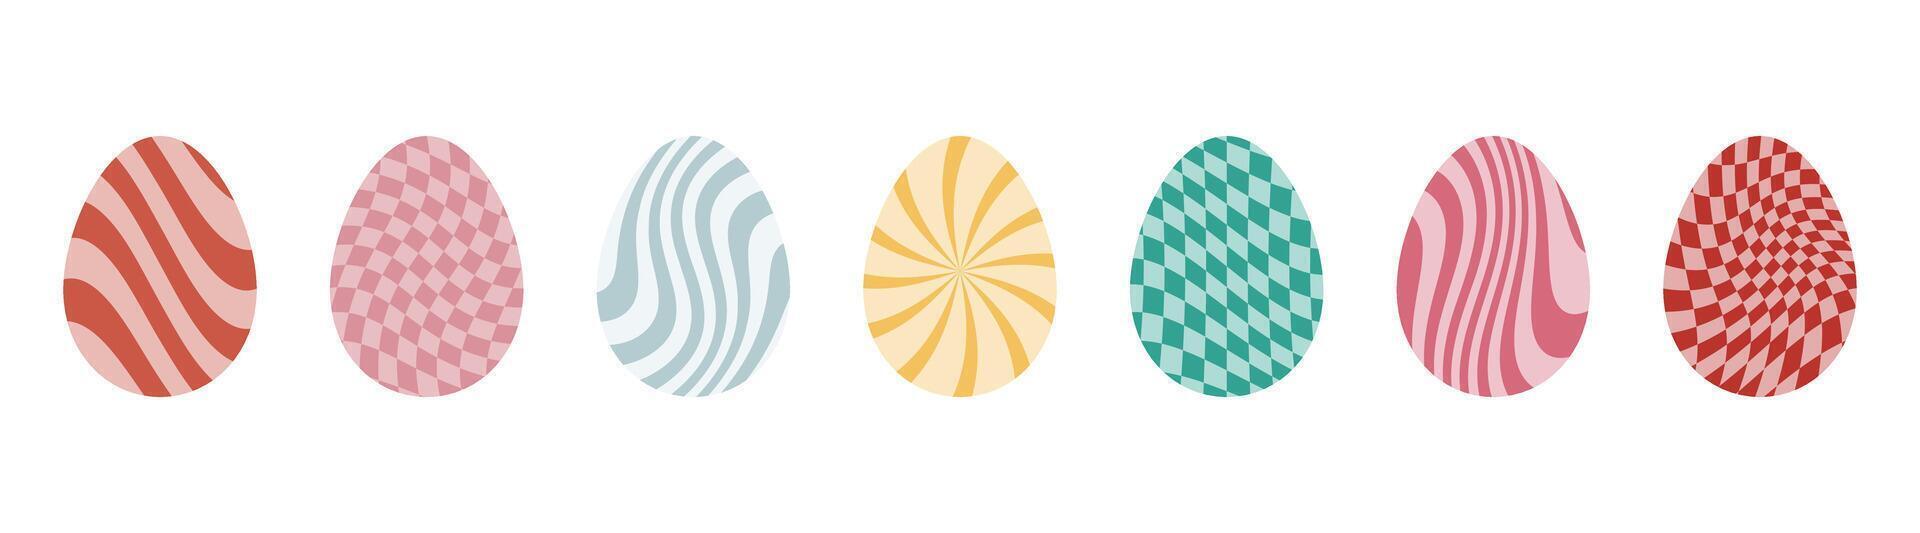 påsk ägg med retro häftig mönster i 60s 70s stil uppsättning. häftig hippie Lycklig påsk med förvrängd psychedelic design. vektor illustration